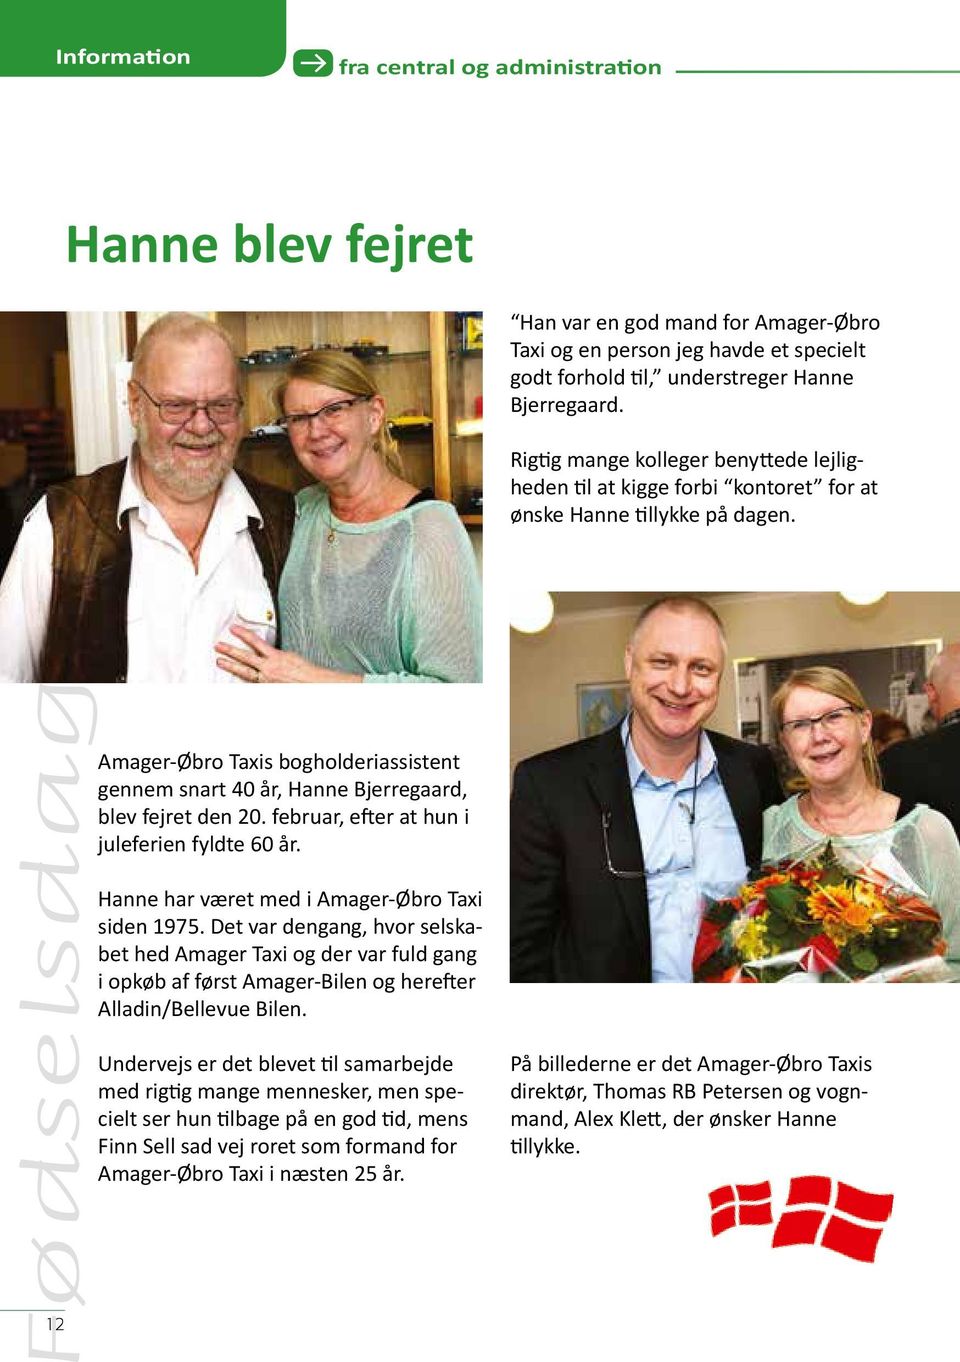 Amager-Øbro Taxis bogholderiassistent gennem snart 40 år, Hanne Bjerregaard, blev fejret den 20. februar, efter at hun i juleferien fyldte 60 år. Hanne har været med i Amager-Øbro Taxi siden 1975.